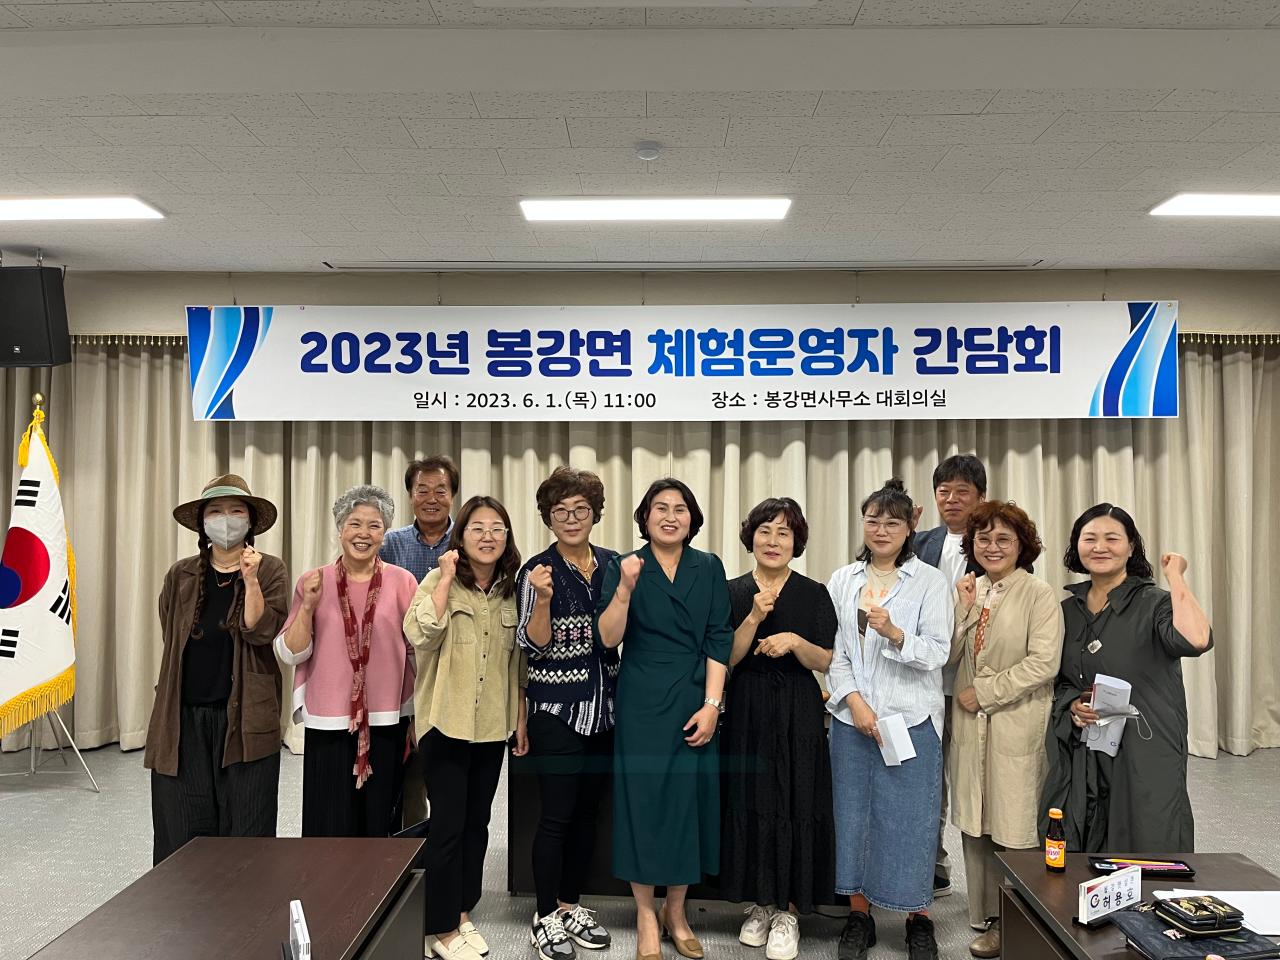 「2023년 봉강면 체험운영자 간담회」 개최